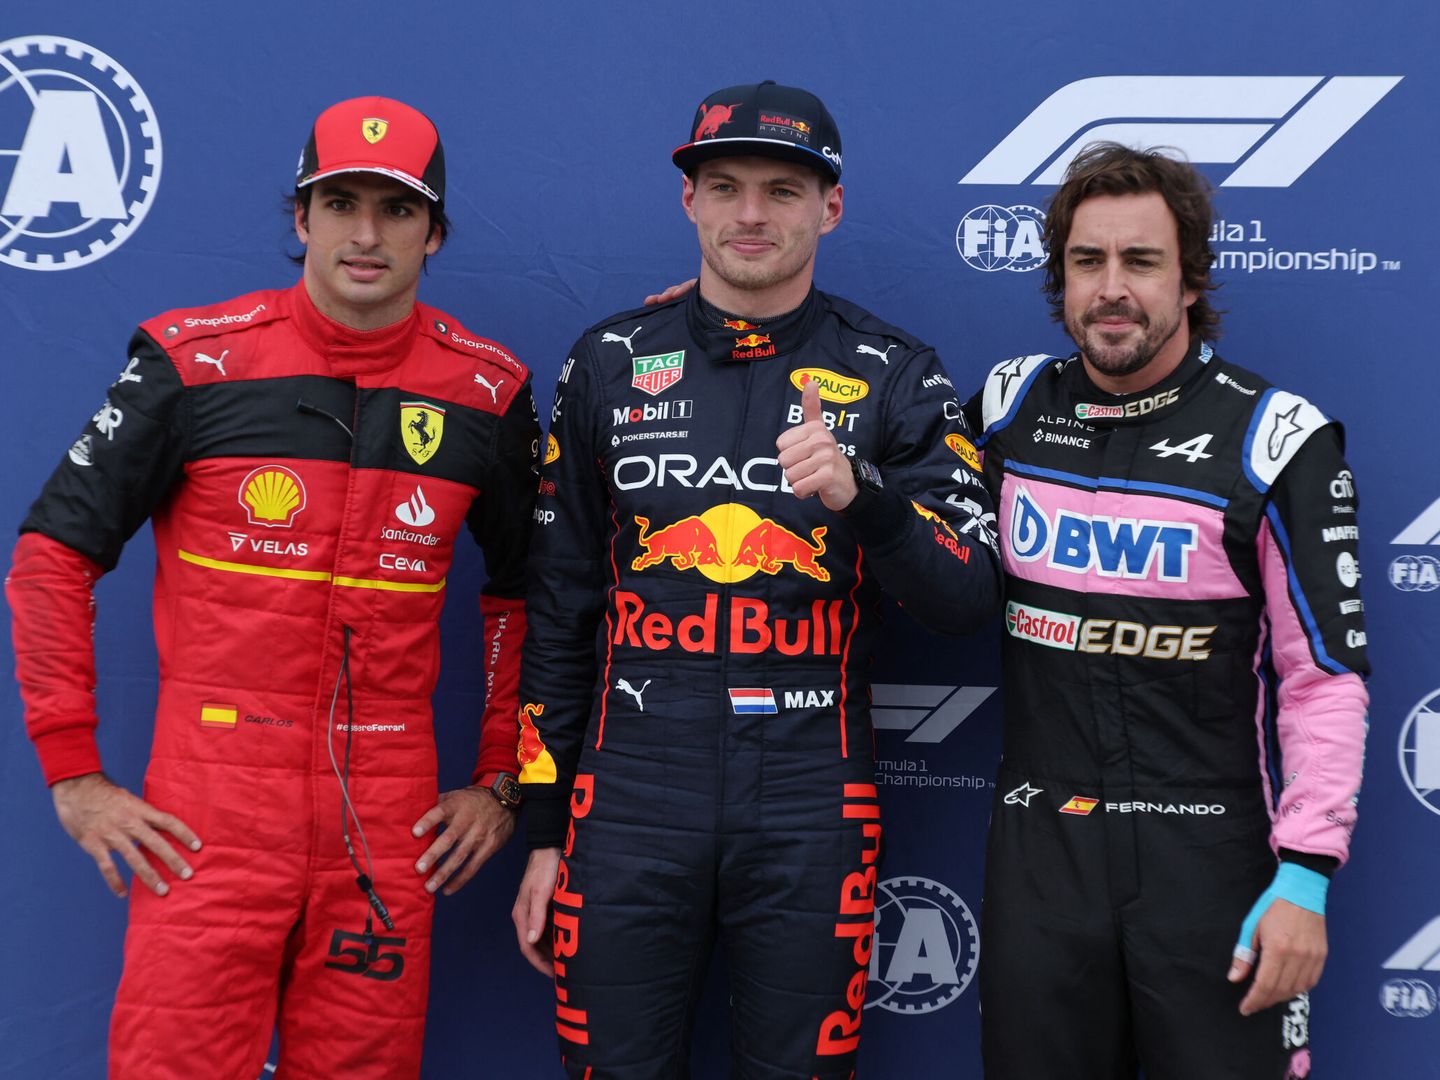 La satisfacción de Alonso era comprensible al verse mezclado entre un RedBull y un Ferrari los grandes dominadores de la temporada (REUTERS /Chris Helgren)